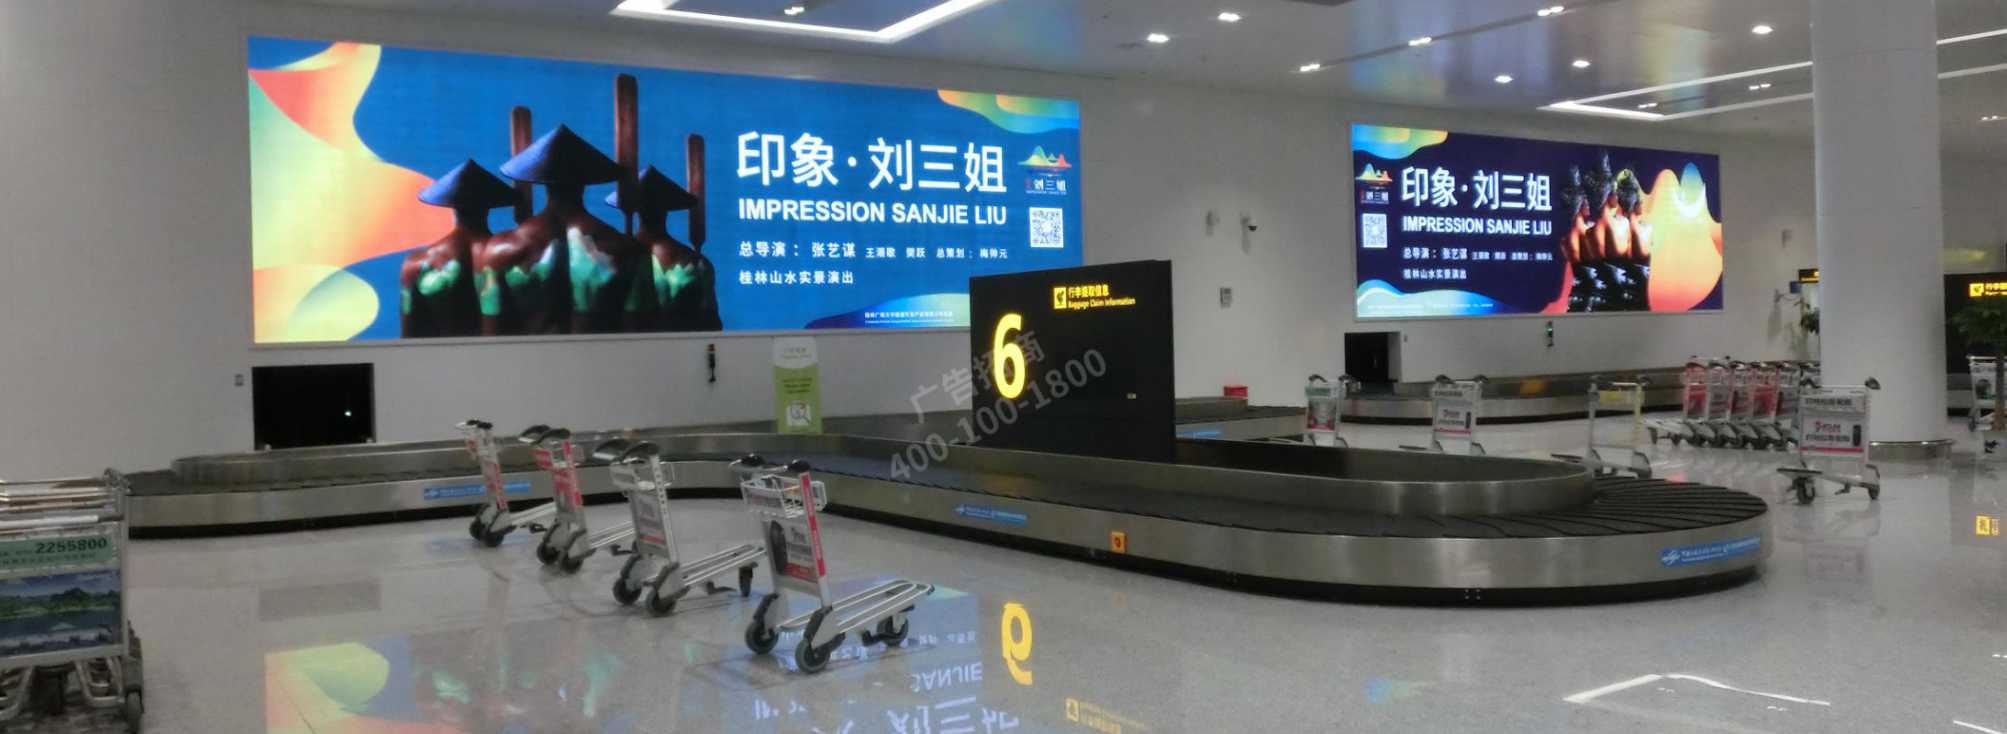 桂林机场广告-国际行李厅墙面灯箱A1